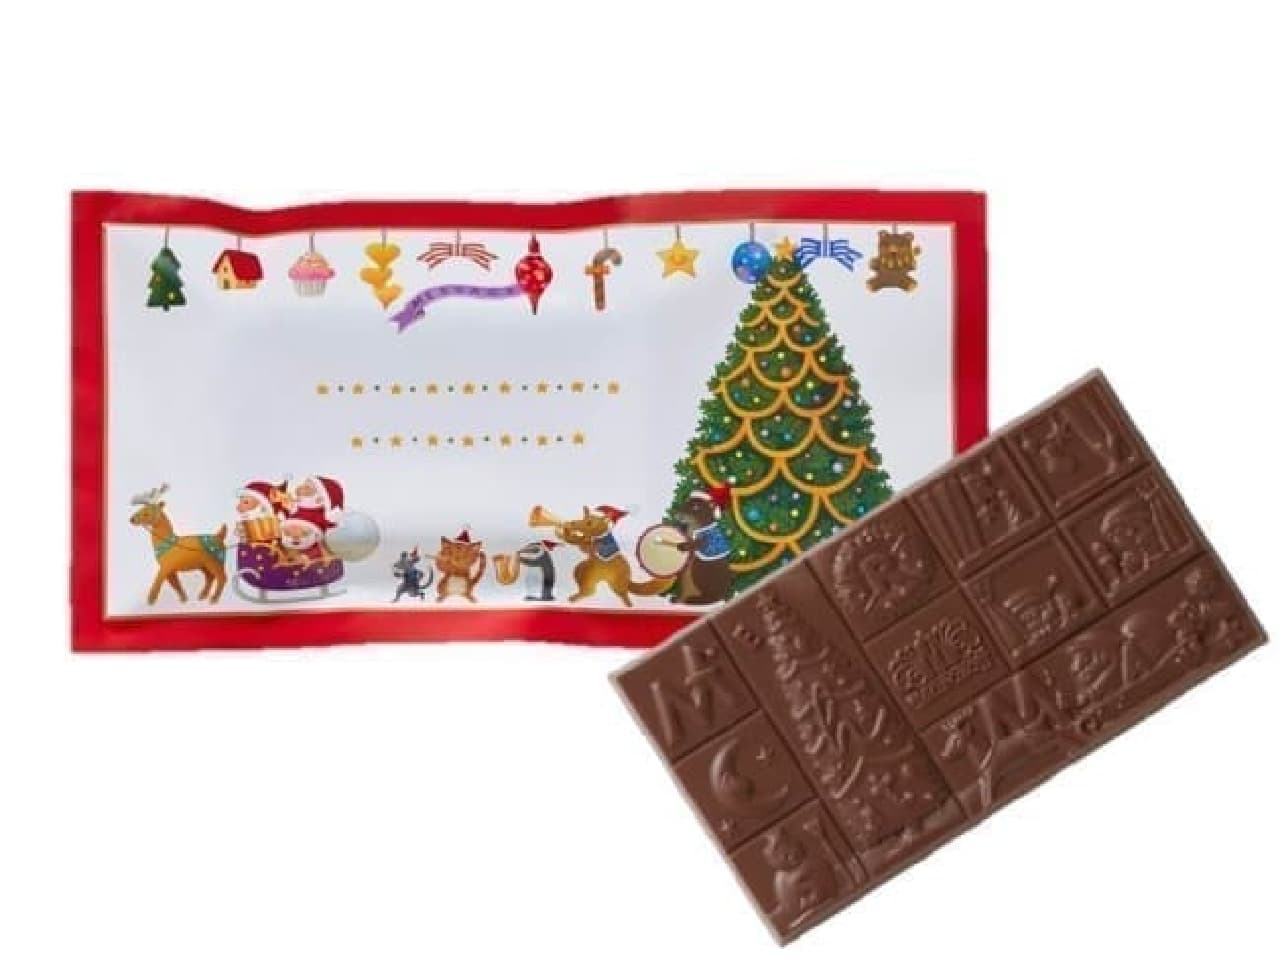 Morozov's Christmas chocolates, fayages, Christmas cards